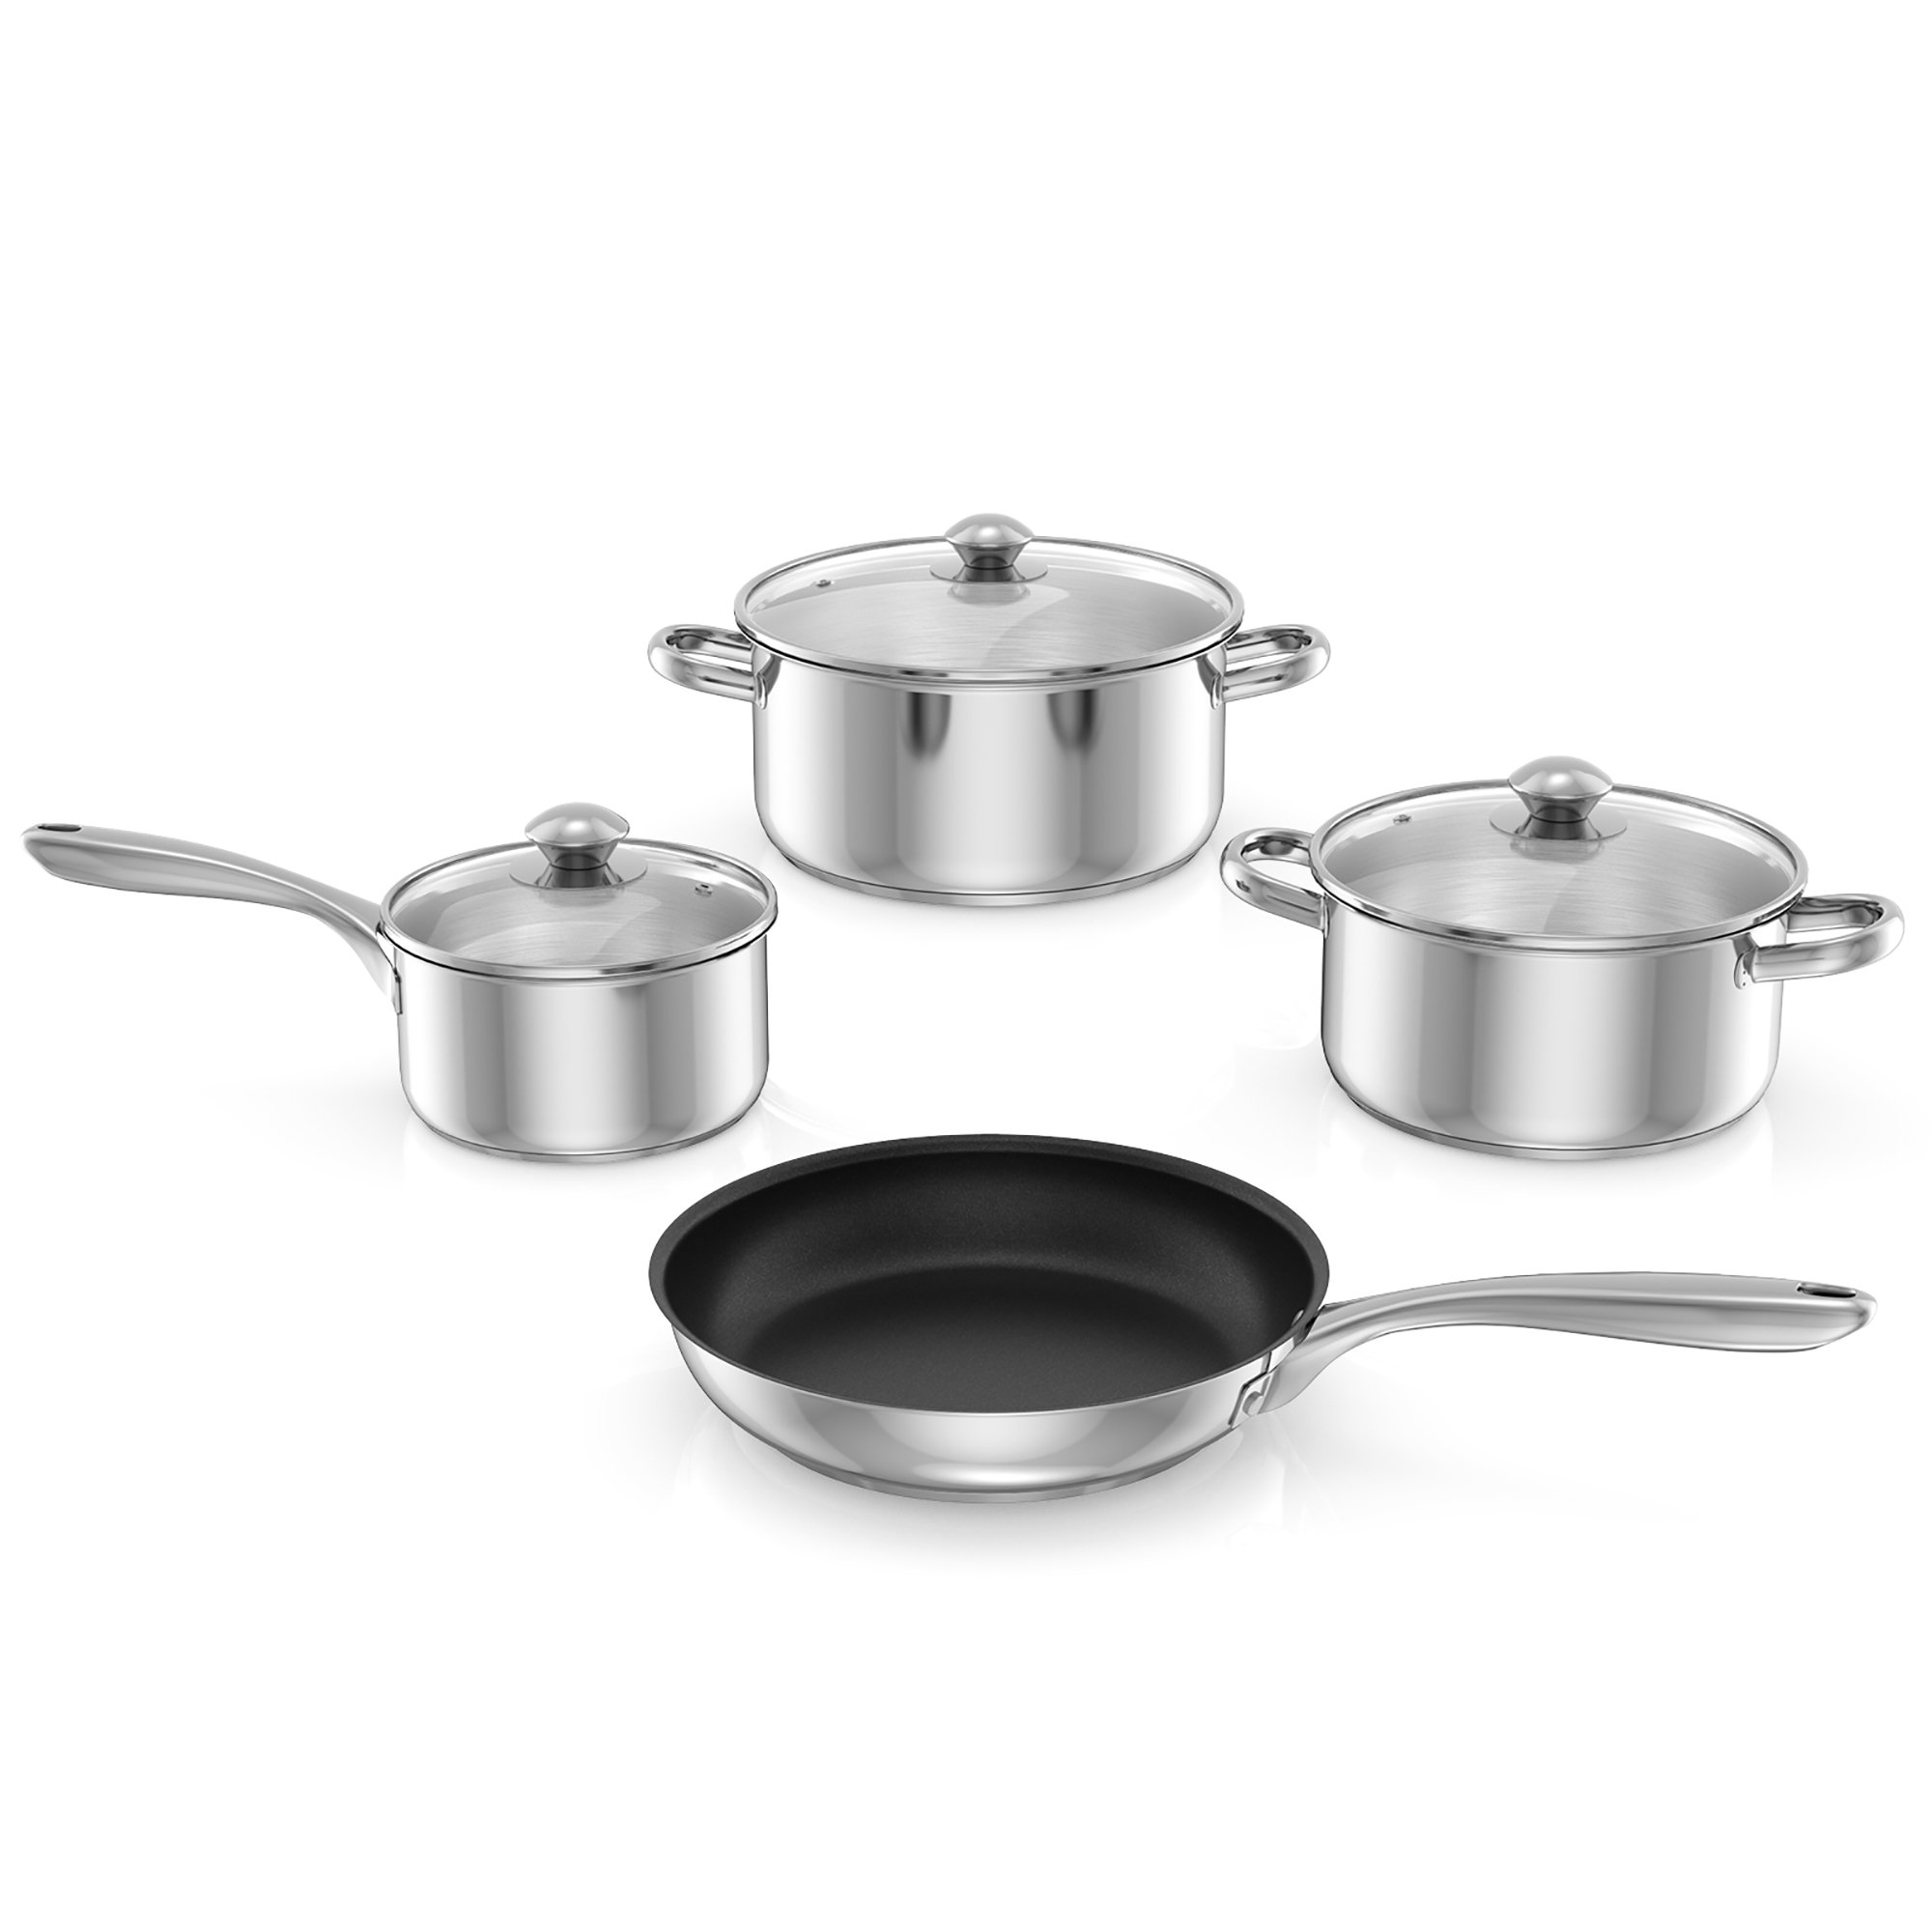 https://assets.wfcdn.com/im/25892999/compr-r85/2414/241425131/7-piece-non-stick-stainless-steel-cookware-set.jpg